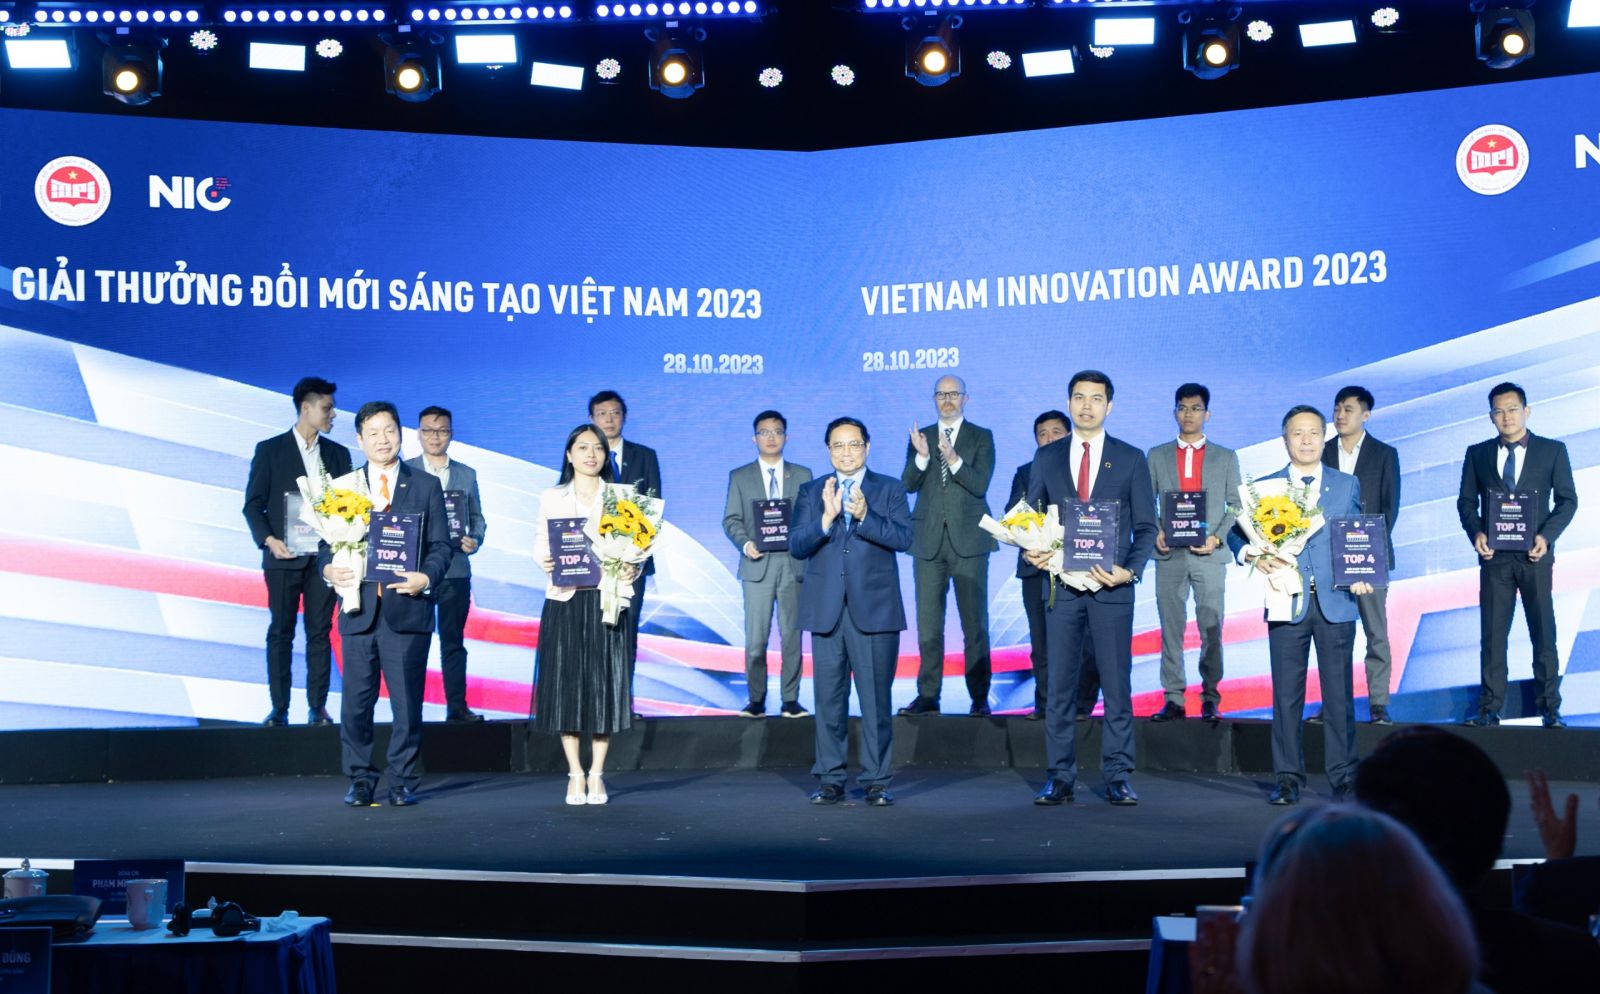 Ông Lê Hồng Quang - Phó Tổng Giám đốc thường trực MISA (thứ hai từ phải sang) đại diện MISA vinh dự được Thủ tướng Chính phủ Phạm Minh Chính trao tặng giải thưởng giải pháp đổi mới sáng tạo toàn diện -p/1 trong 4 giải pháp đổi mới sáng tạo xuất sắc nhất Việt Nam 2023.